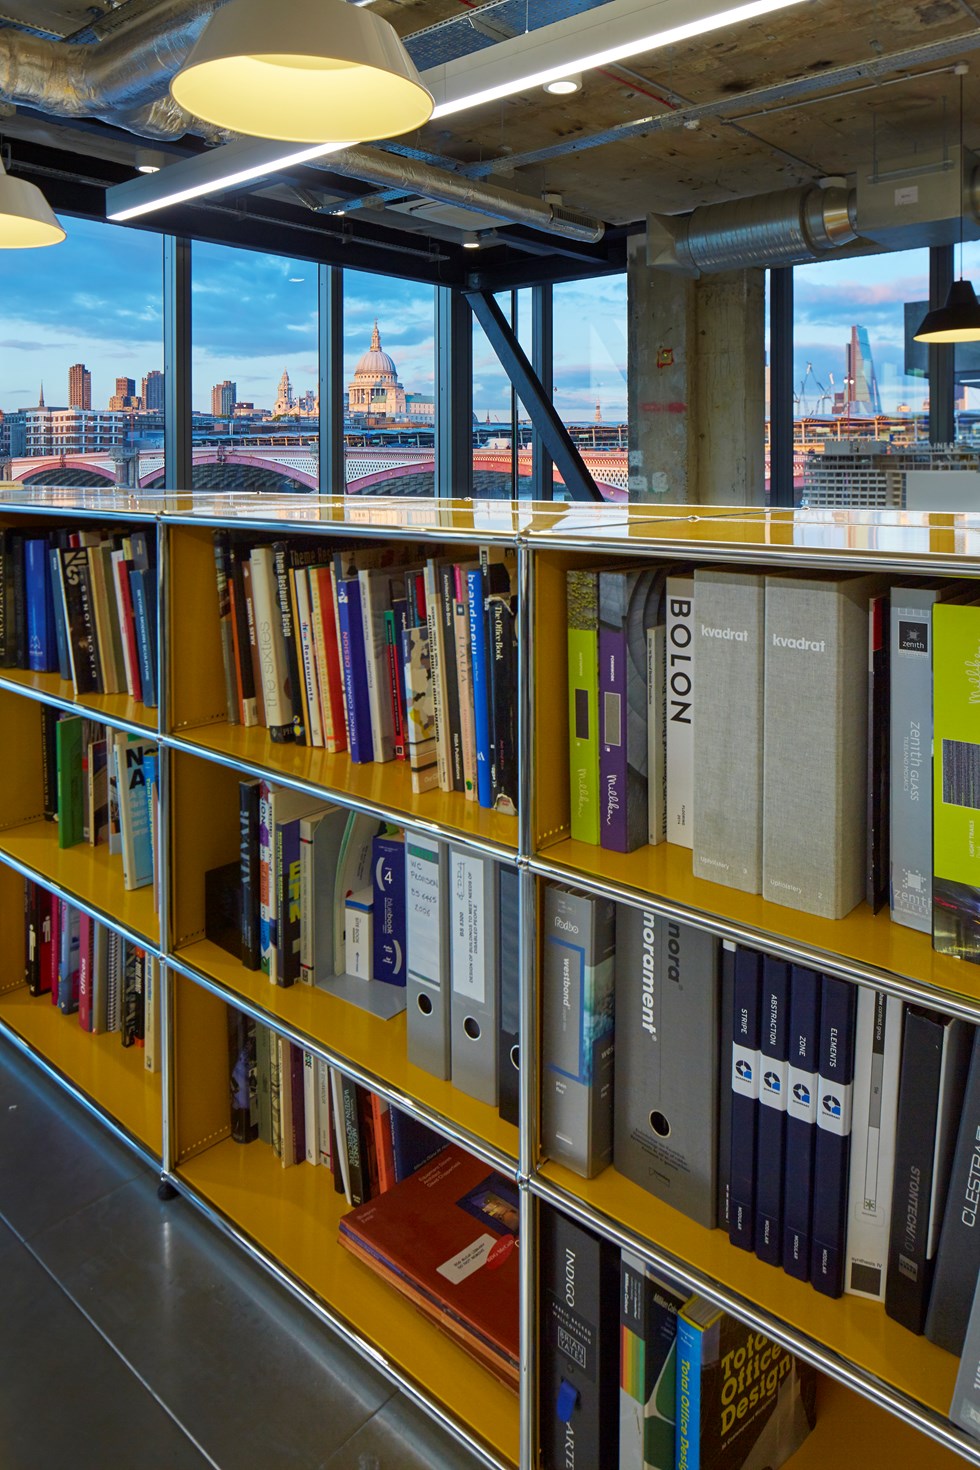 Goldgelbe USM Haller Bücherregale in einem modernen Büro